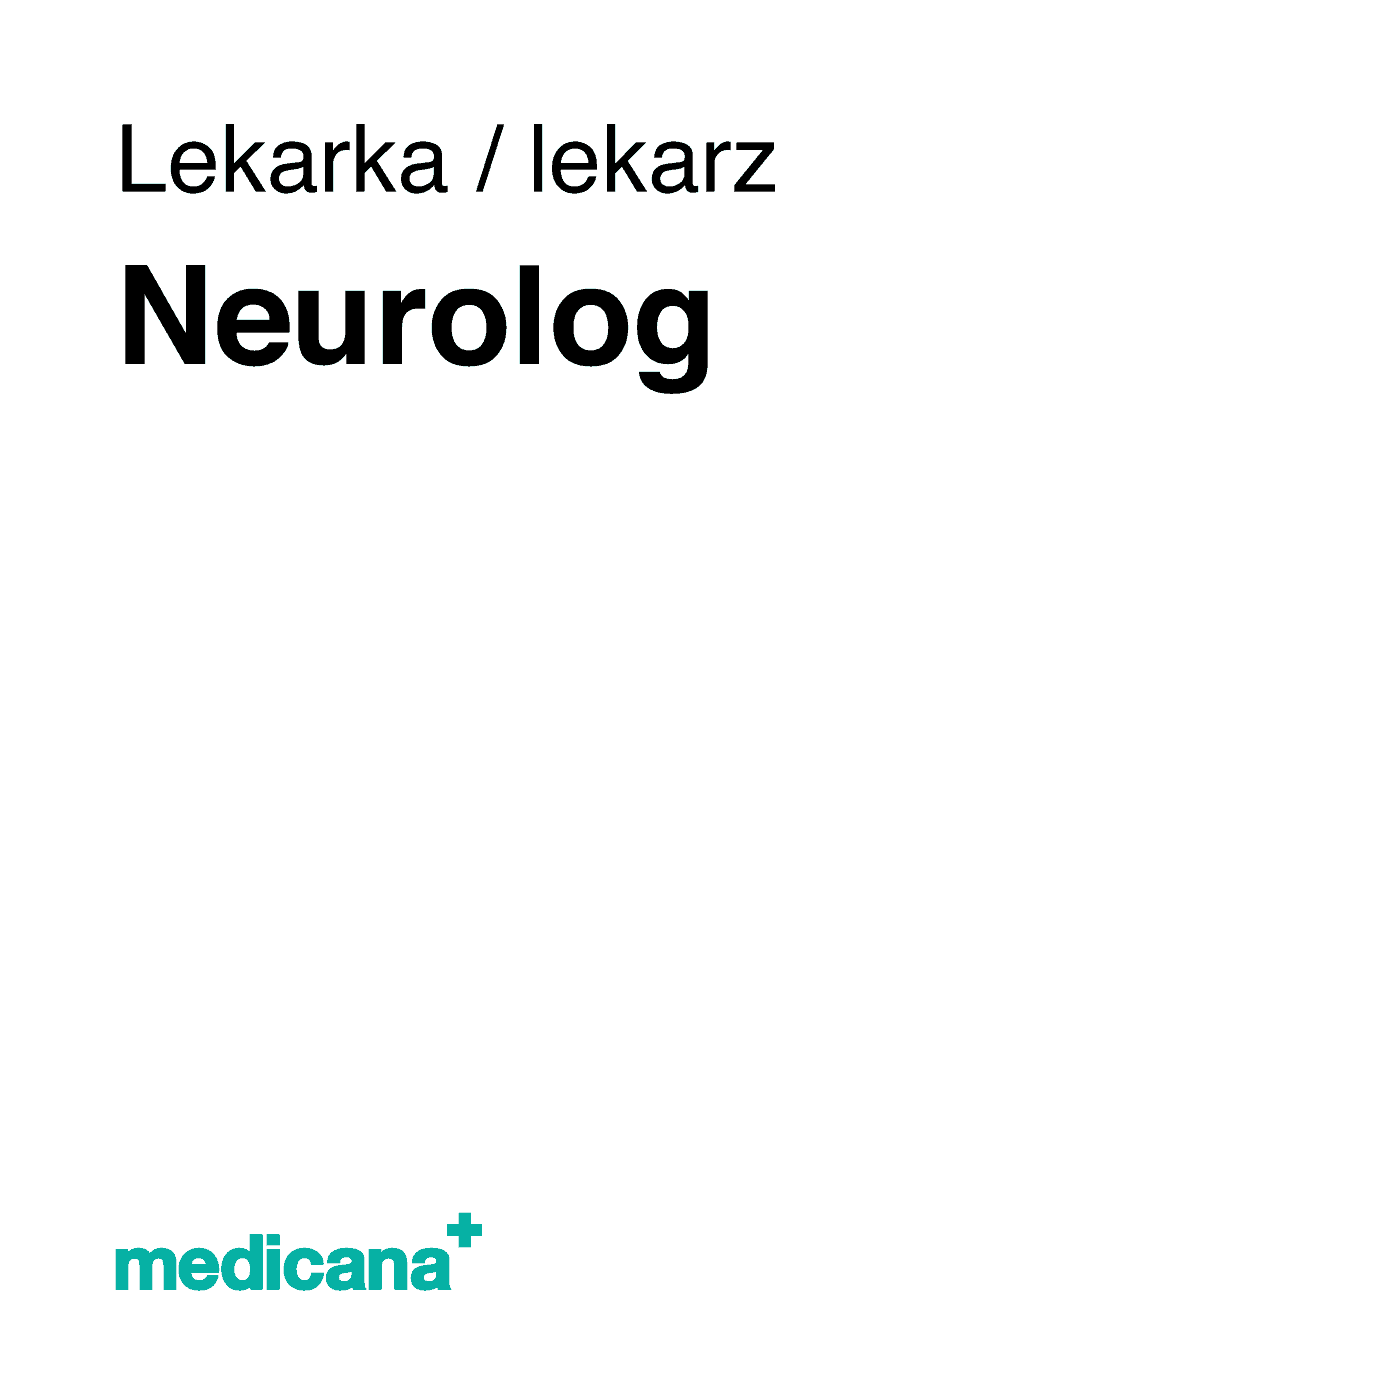 Ilustracja, białe tło i czarny napis w lewym górnym narożniku "Lekarka, lekarz neurolog" i logo Medicana Centrum Terapii Medyczna Marihuana w lewym dolnym rogu.